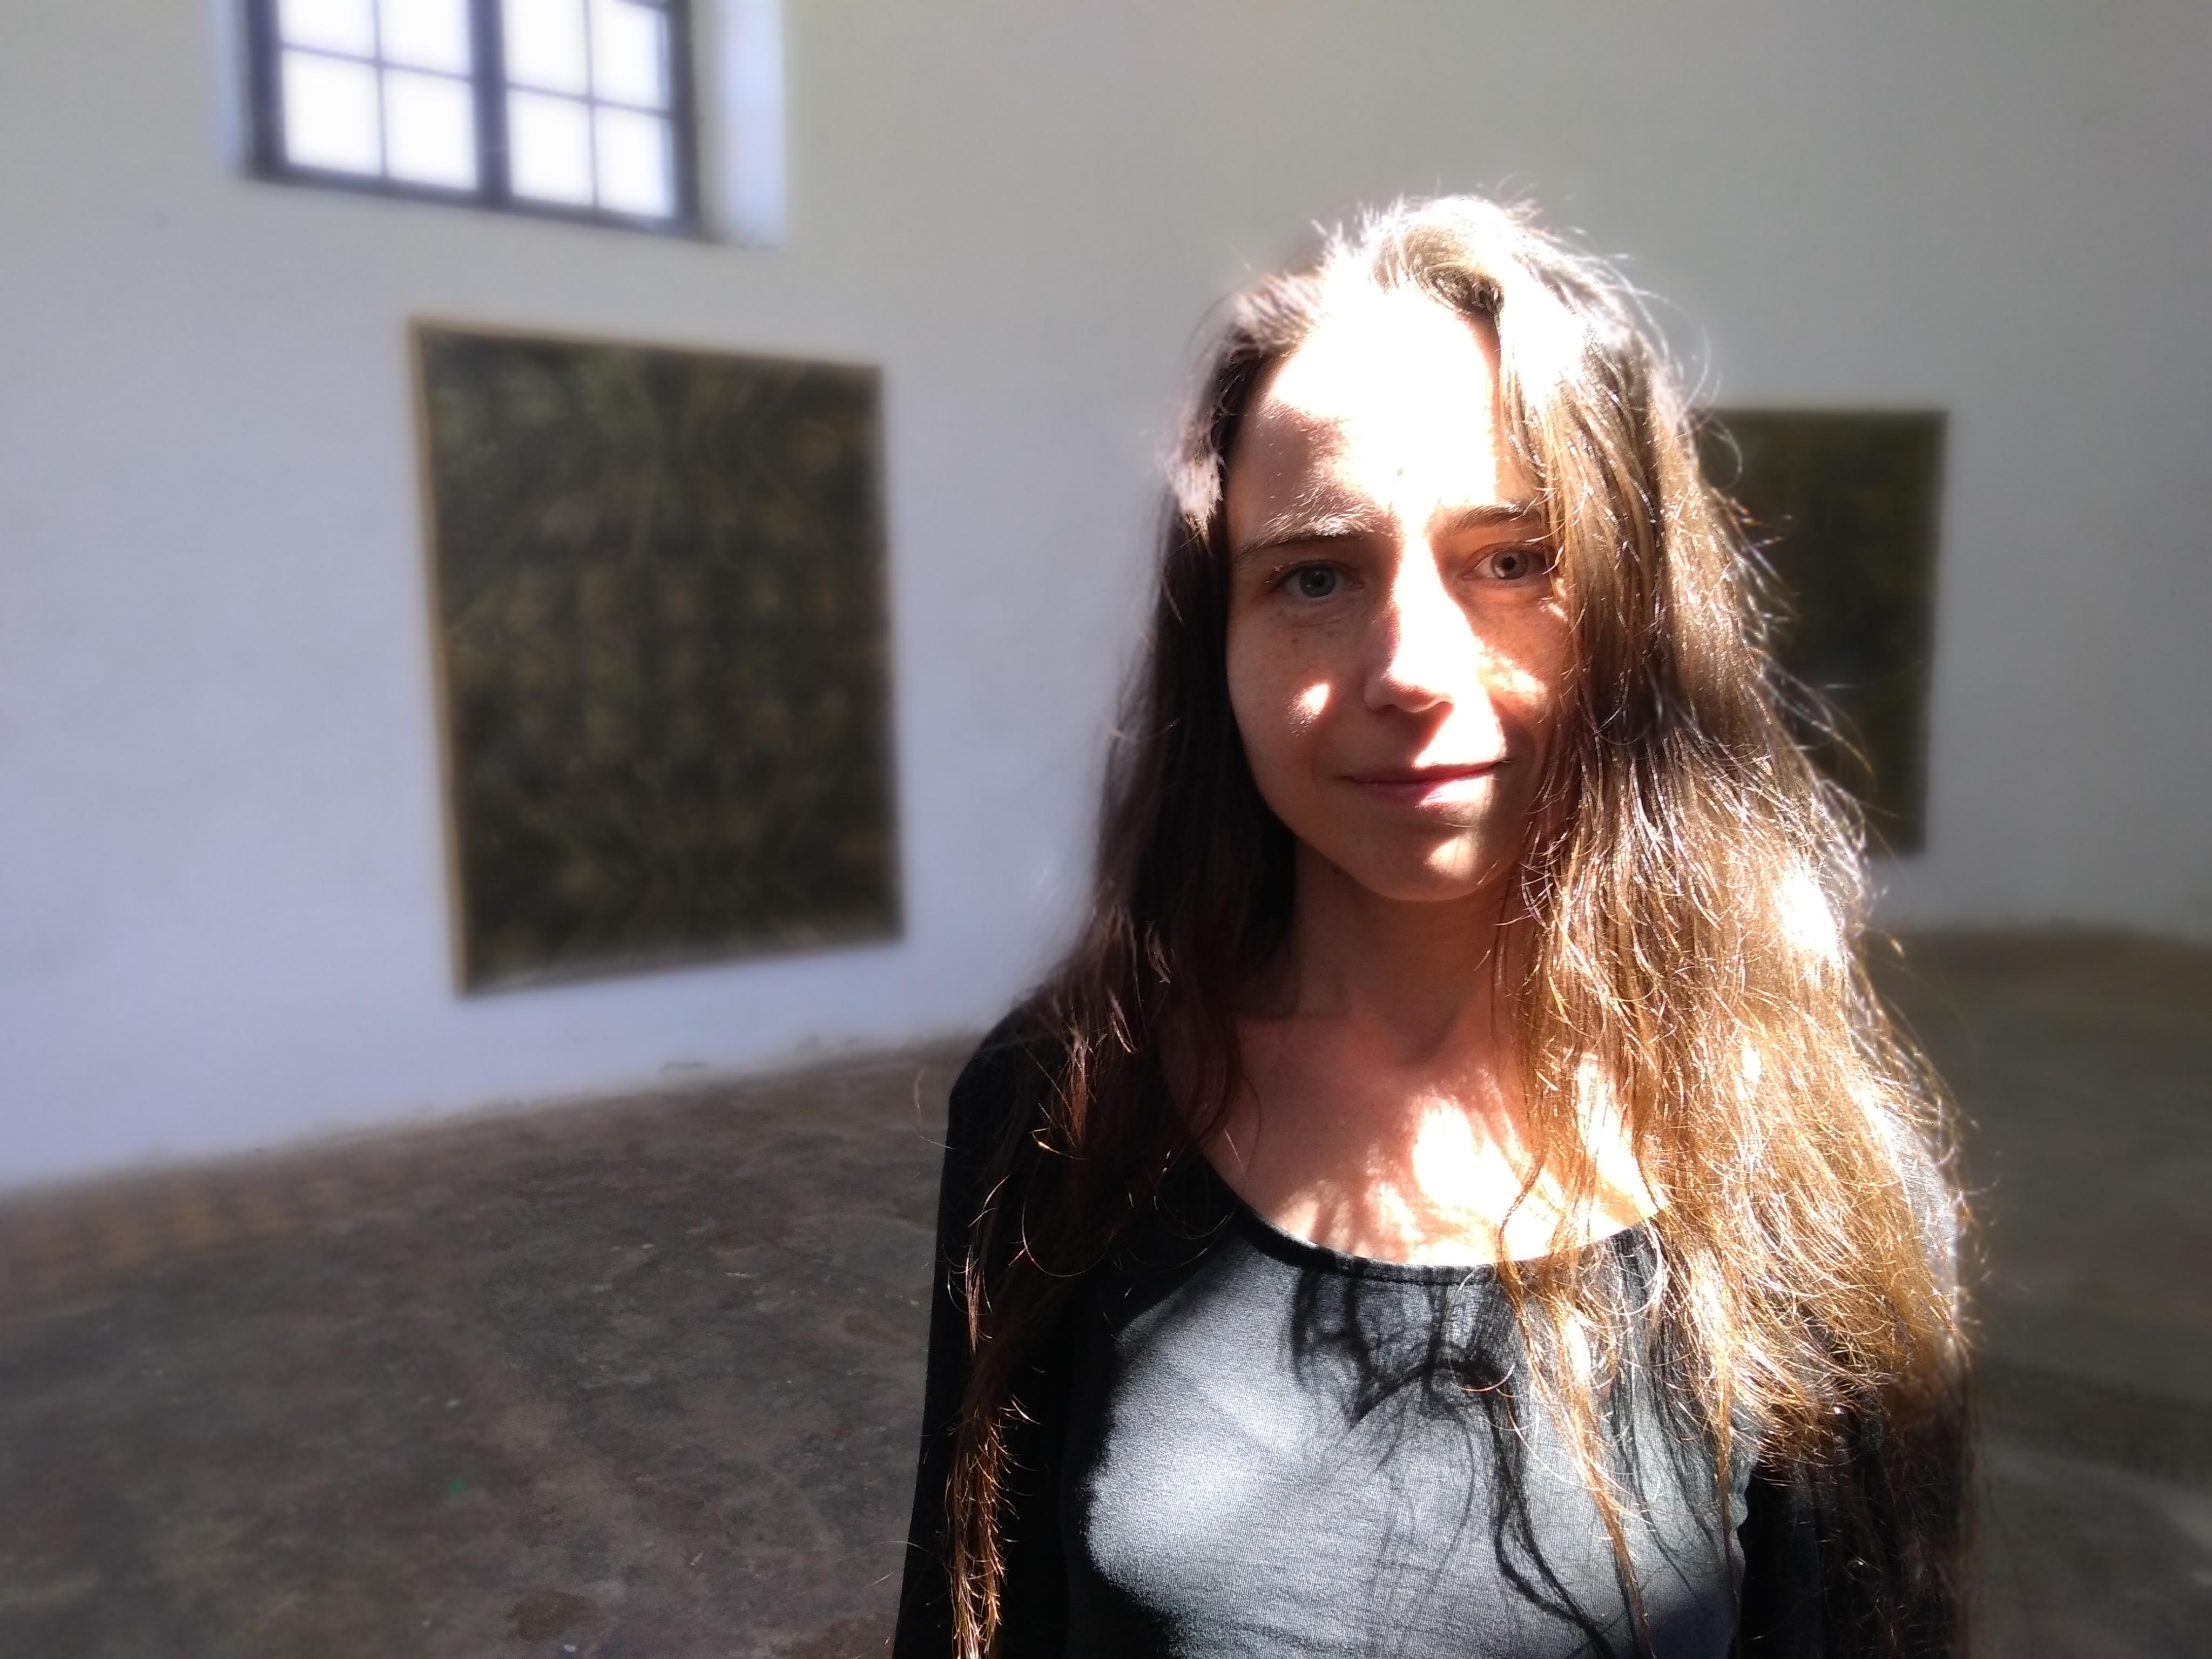 Galerie v Andělské hoře se umělkyni líbí